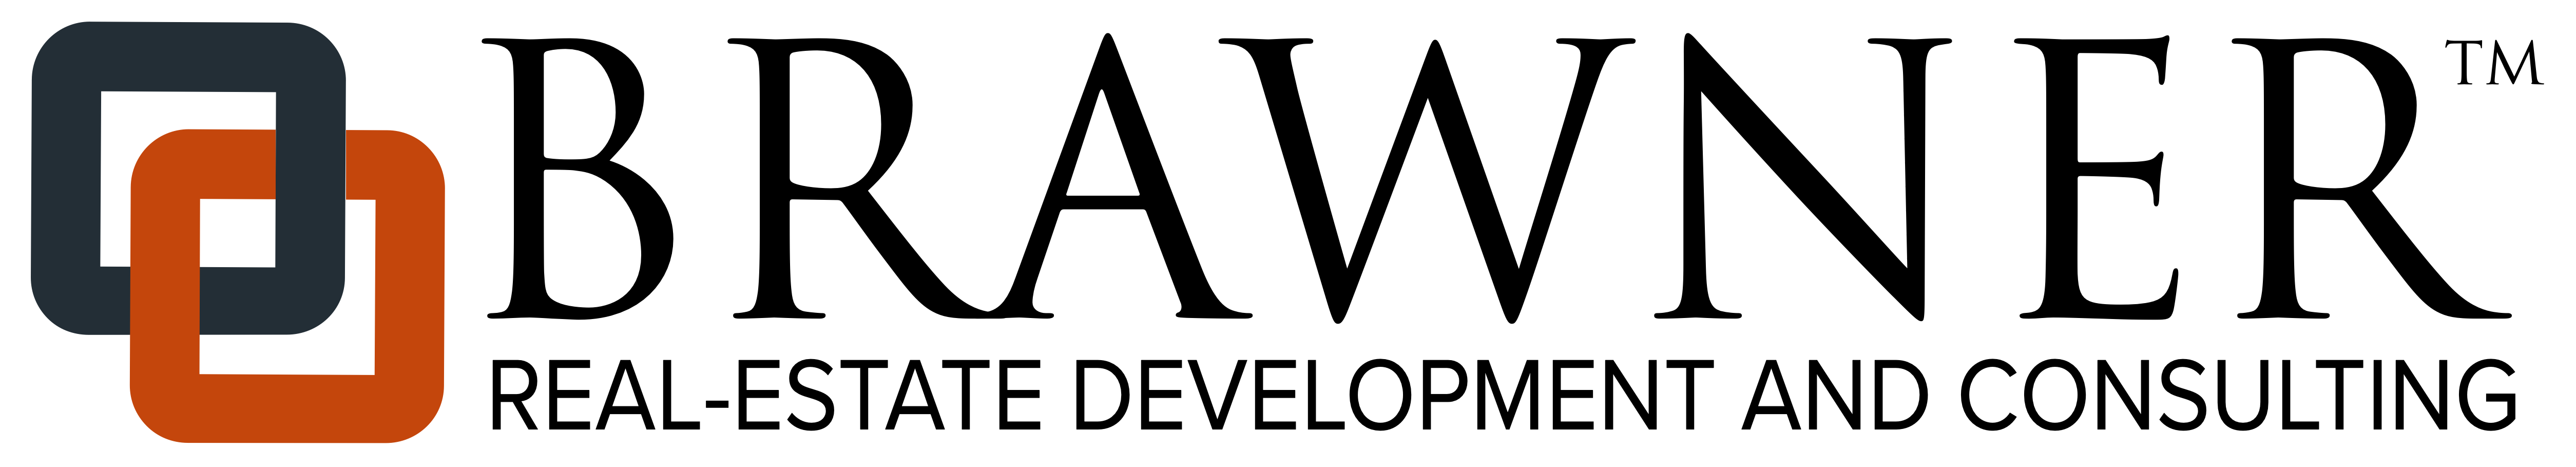 Brawner logo